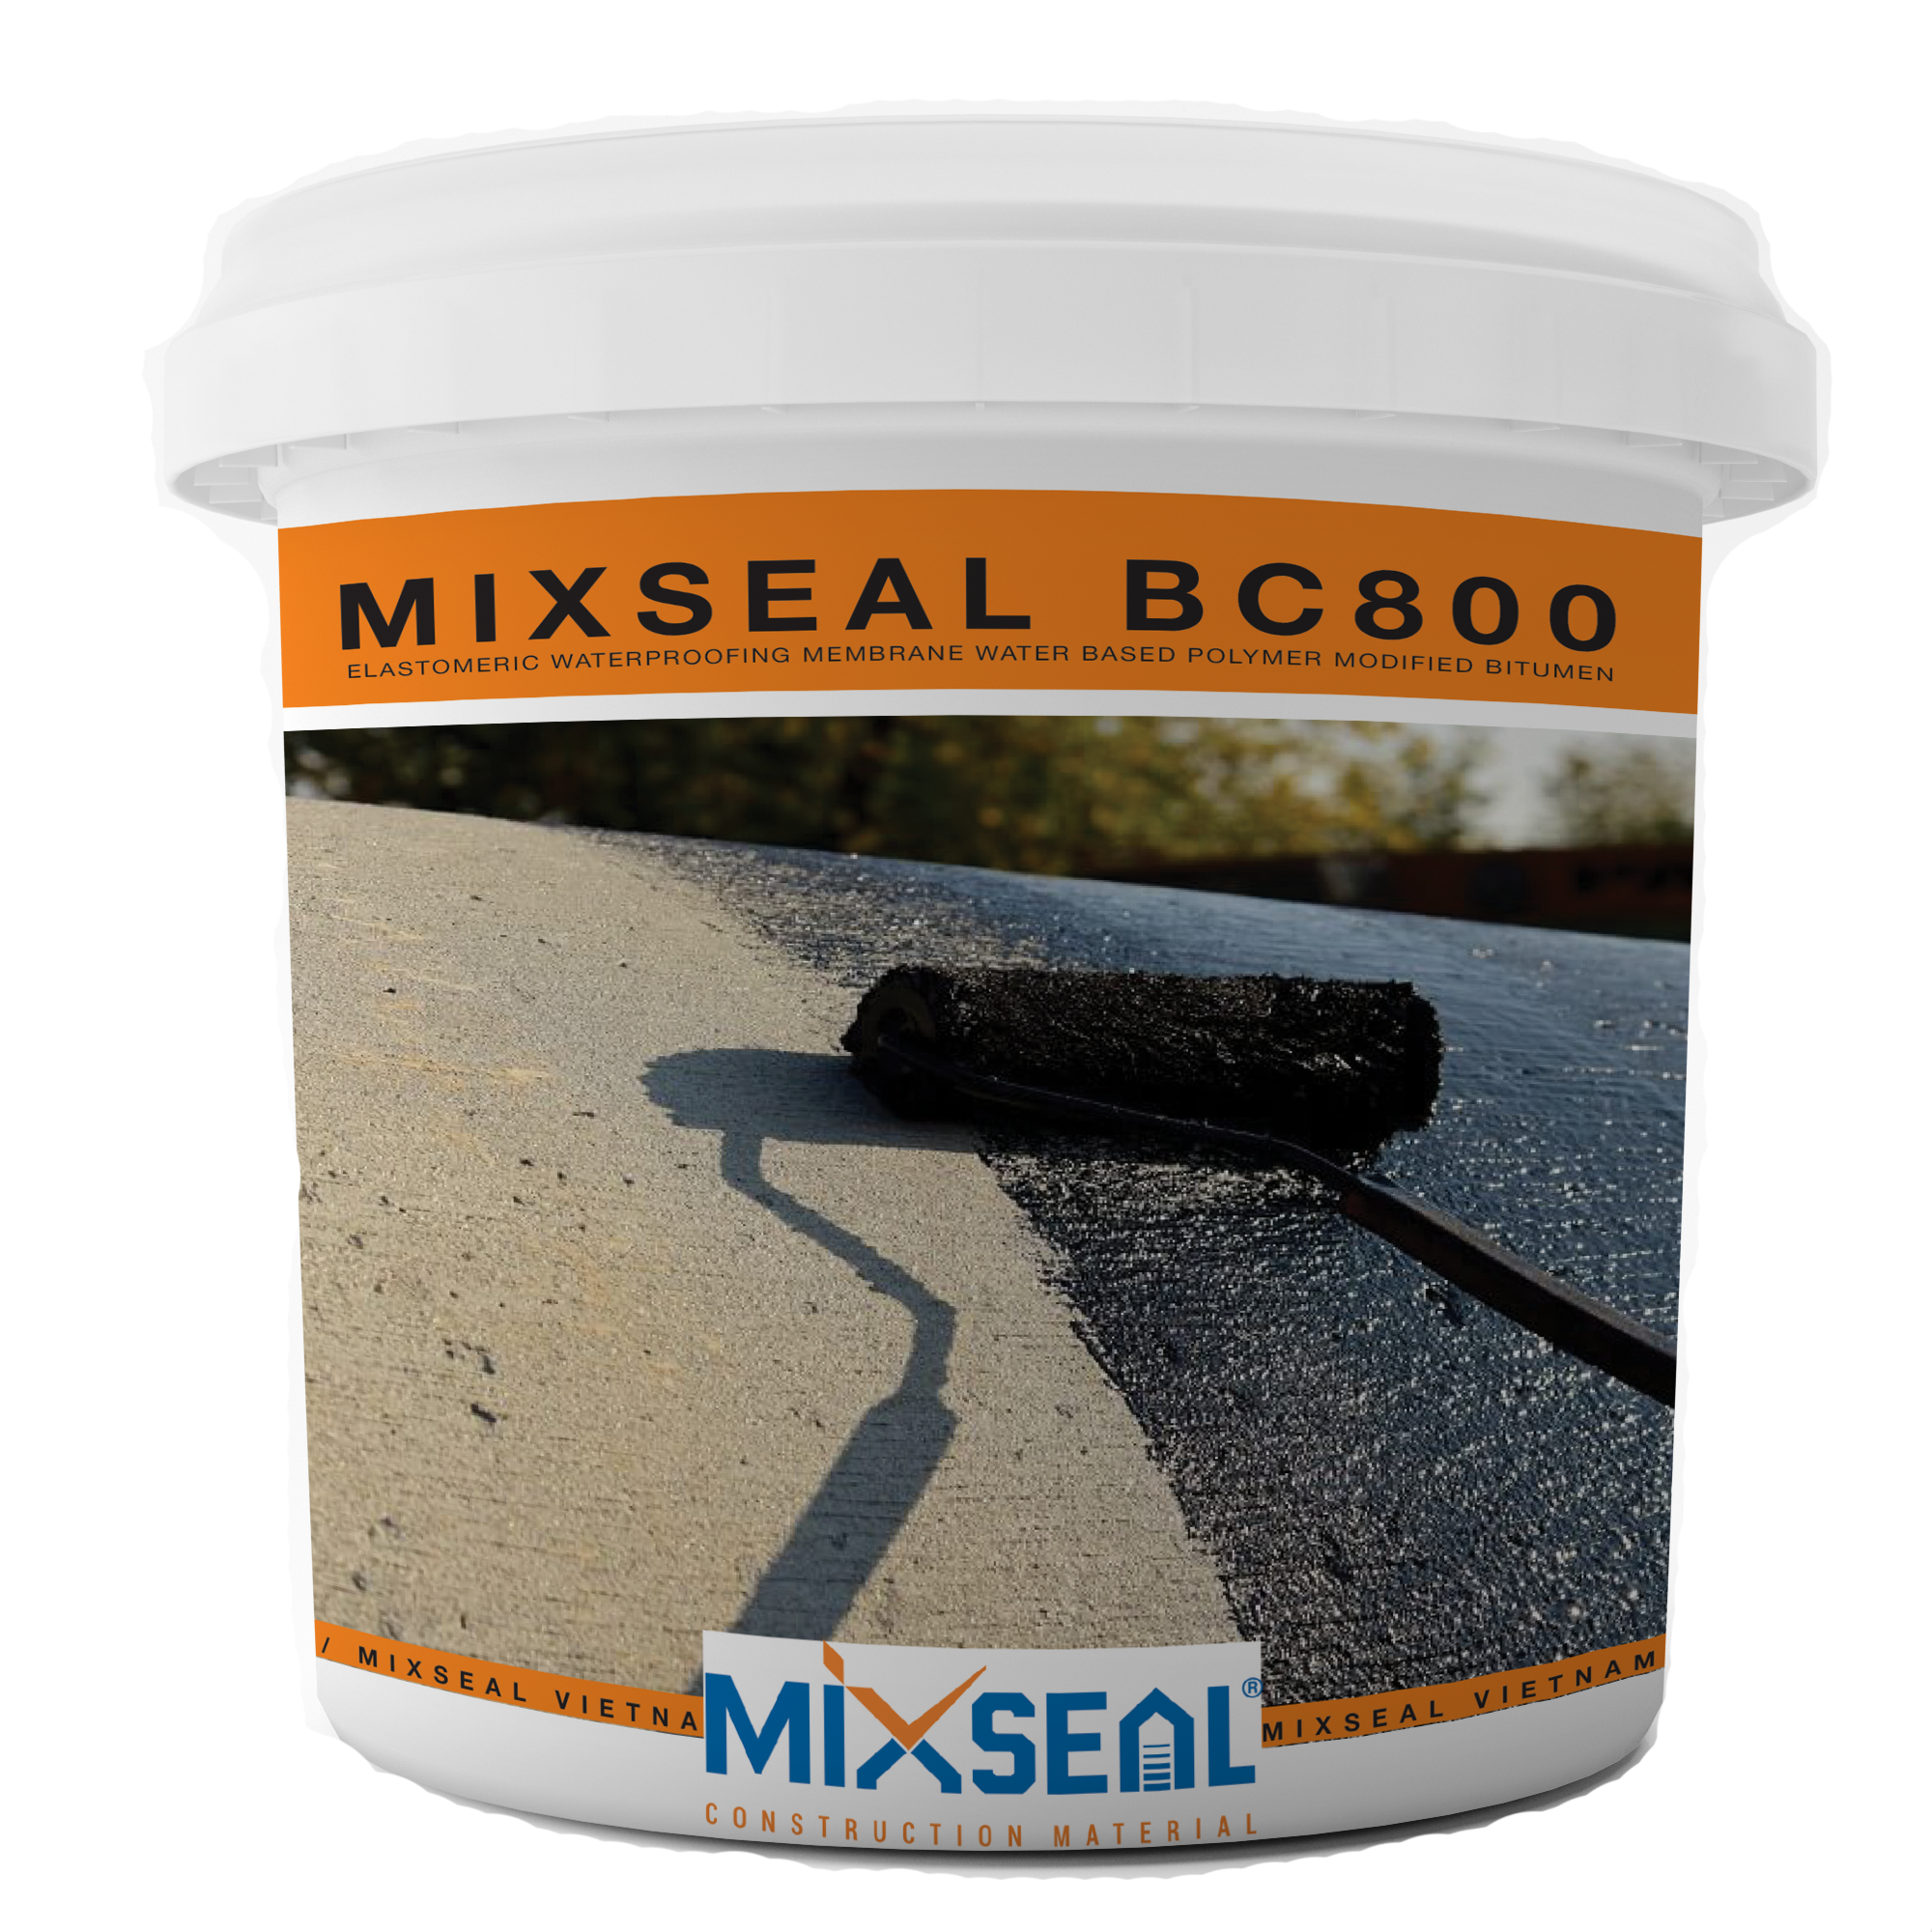 MIXSEAL BC800